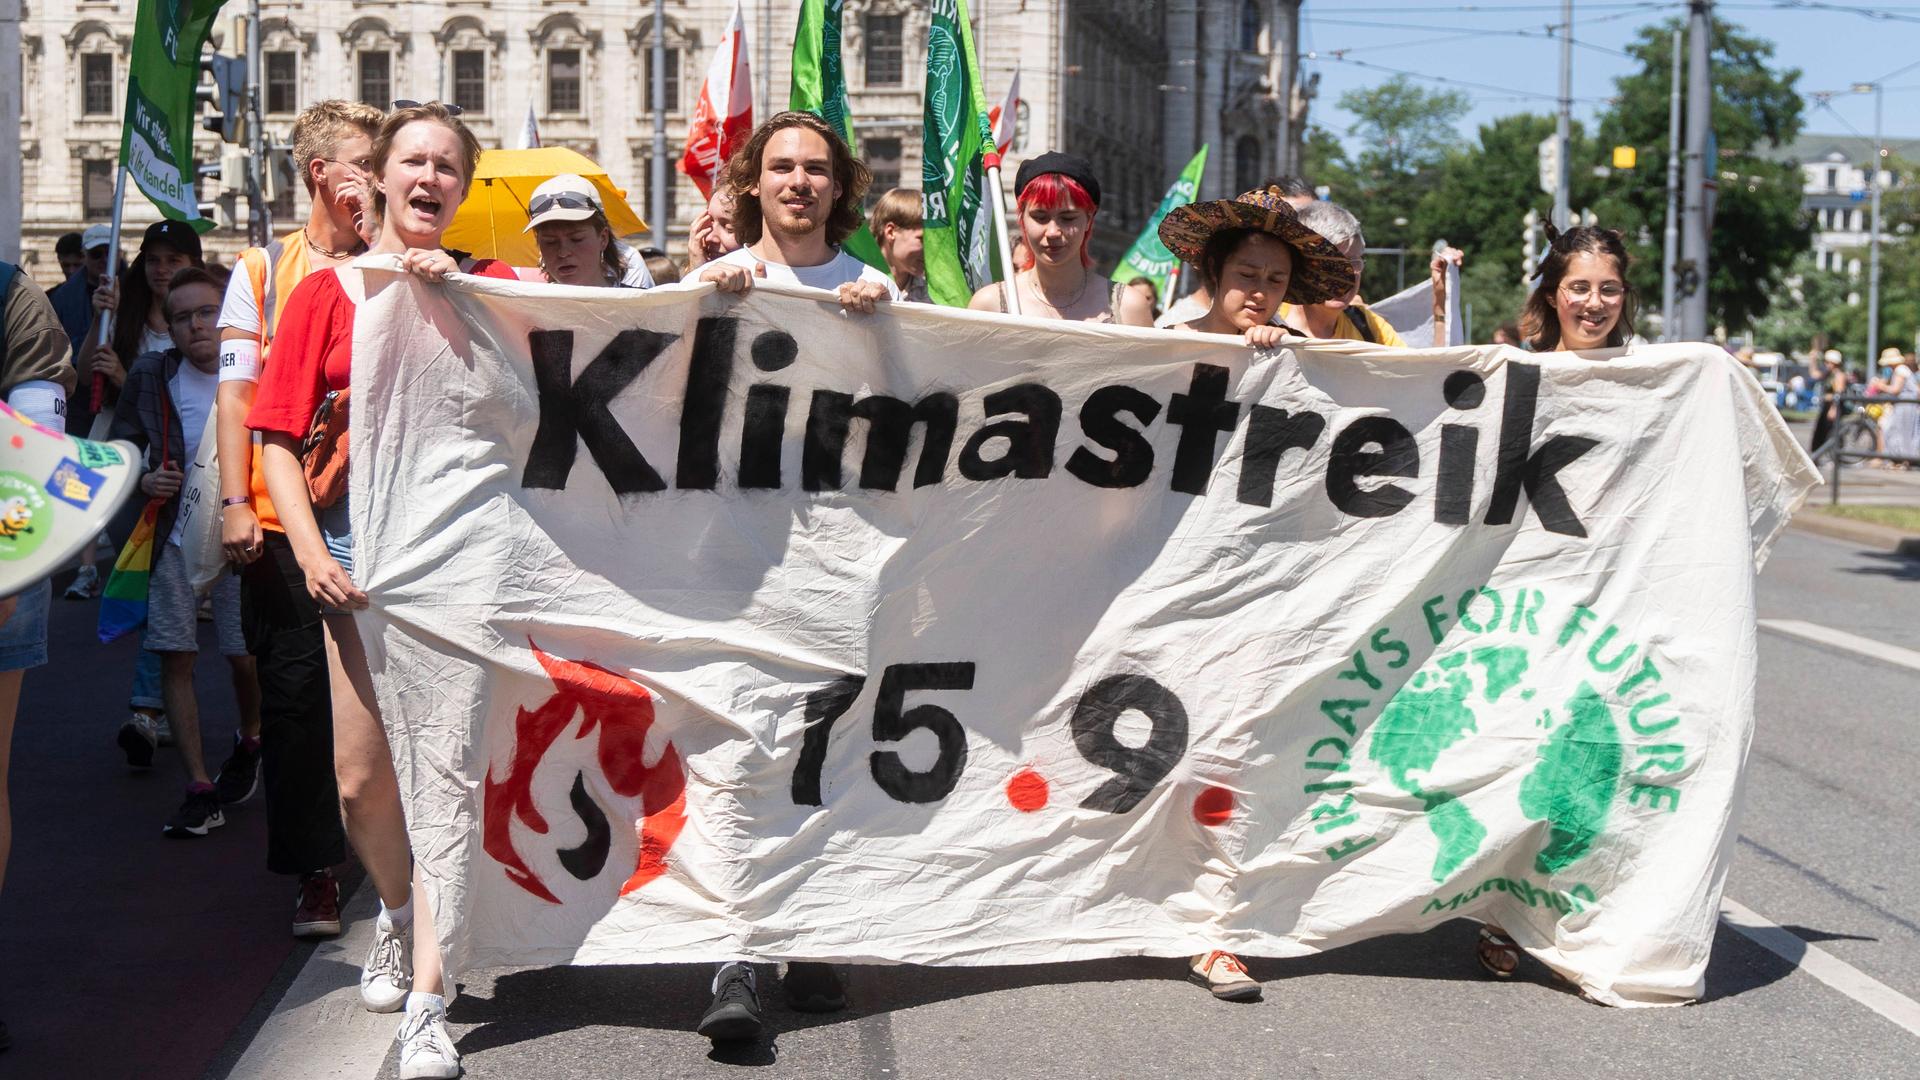 Fridays for Future Demonstration in München. DIe vordere Reihe trägt ein Banner auf dem steht "Klimastreik 15.9.".